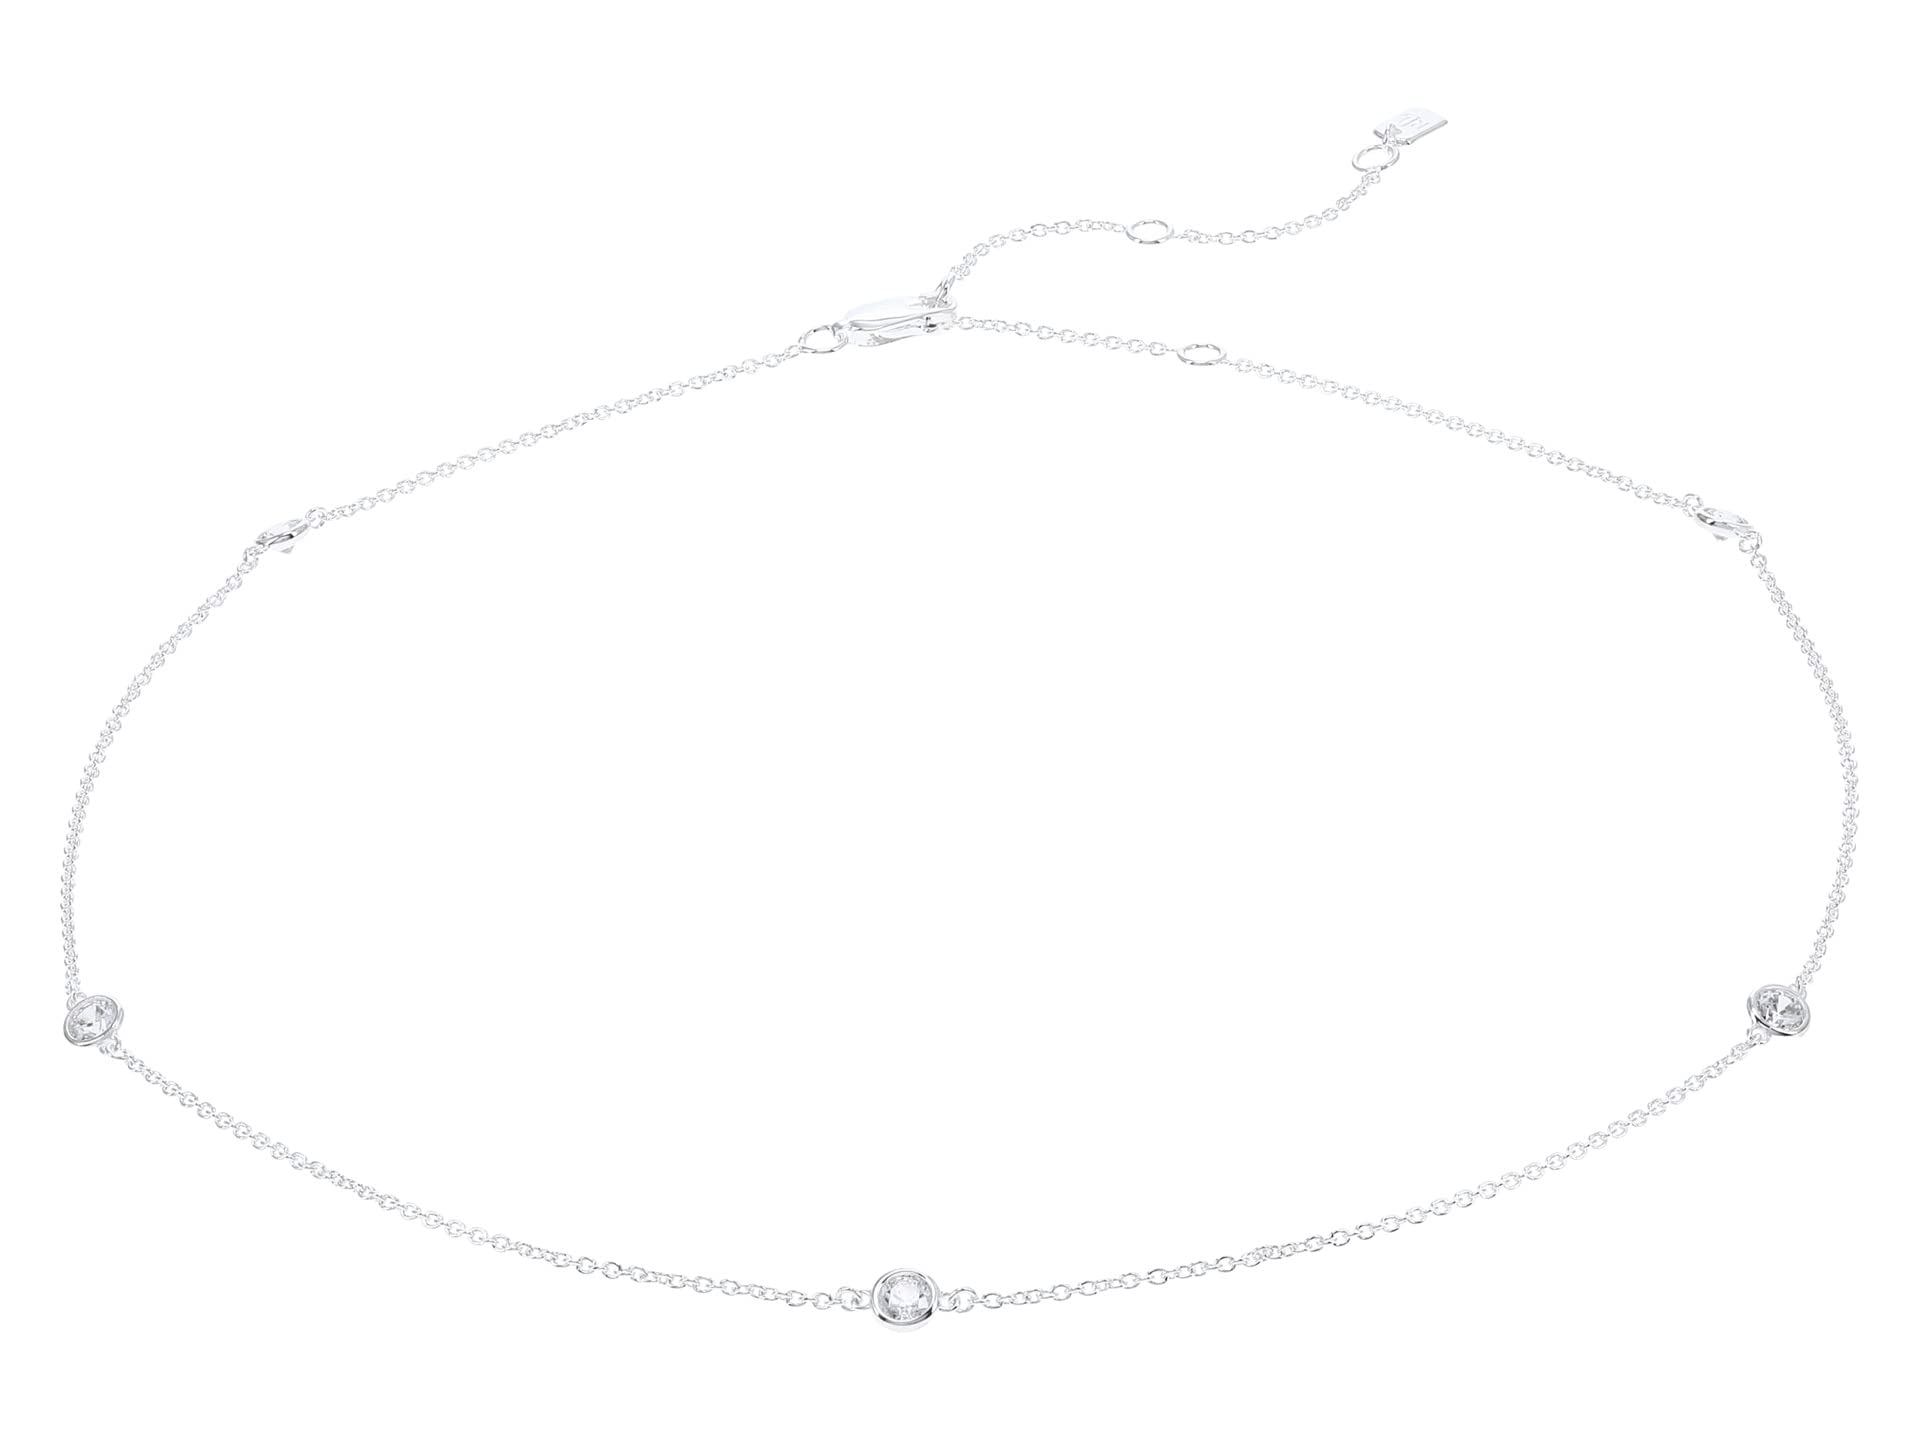 Ожерелье с воротником-цепочкой Chanel Set CZ Ralph Lauren